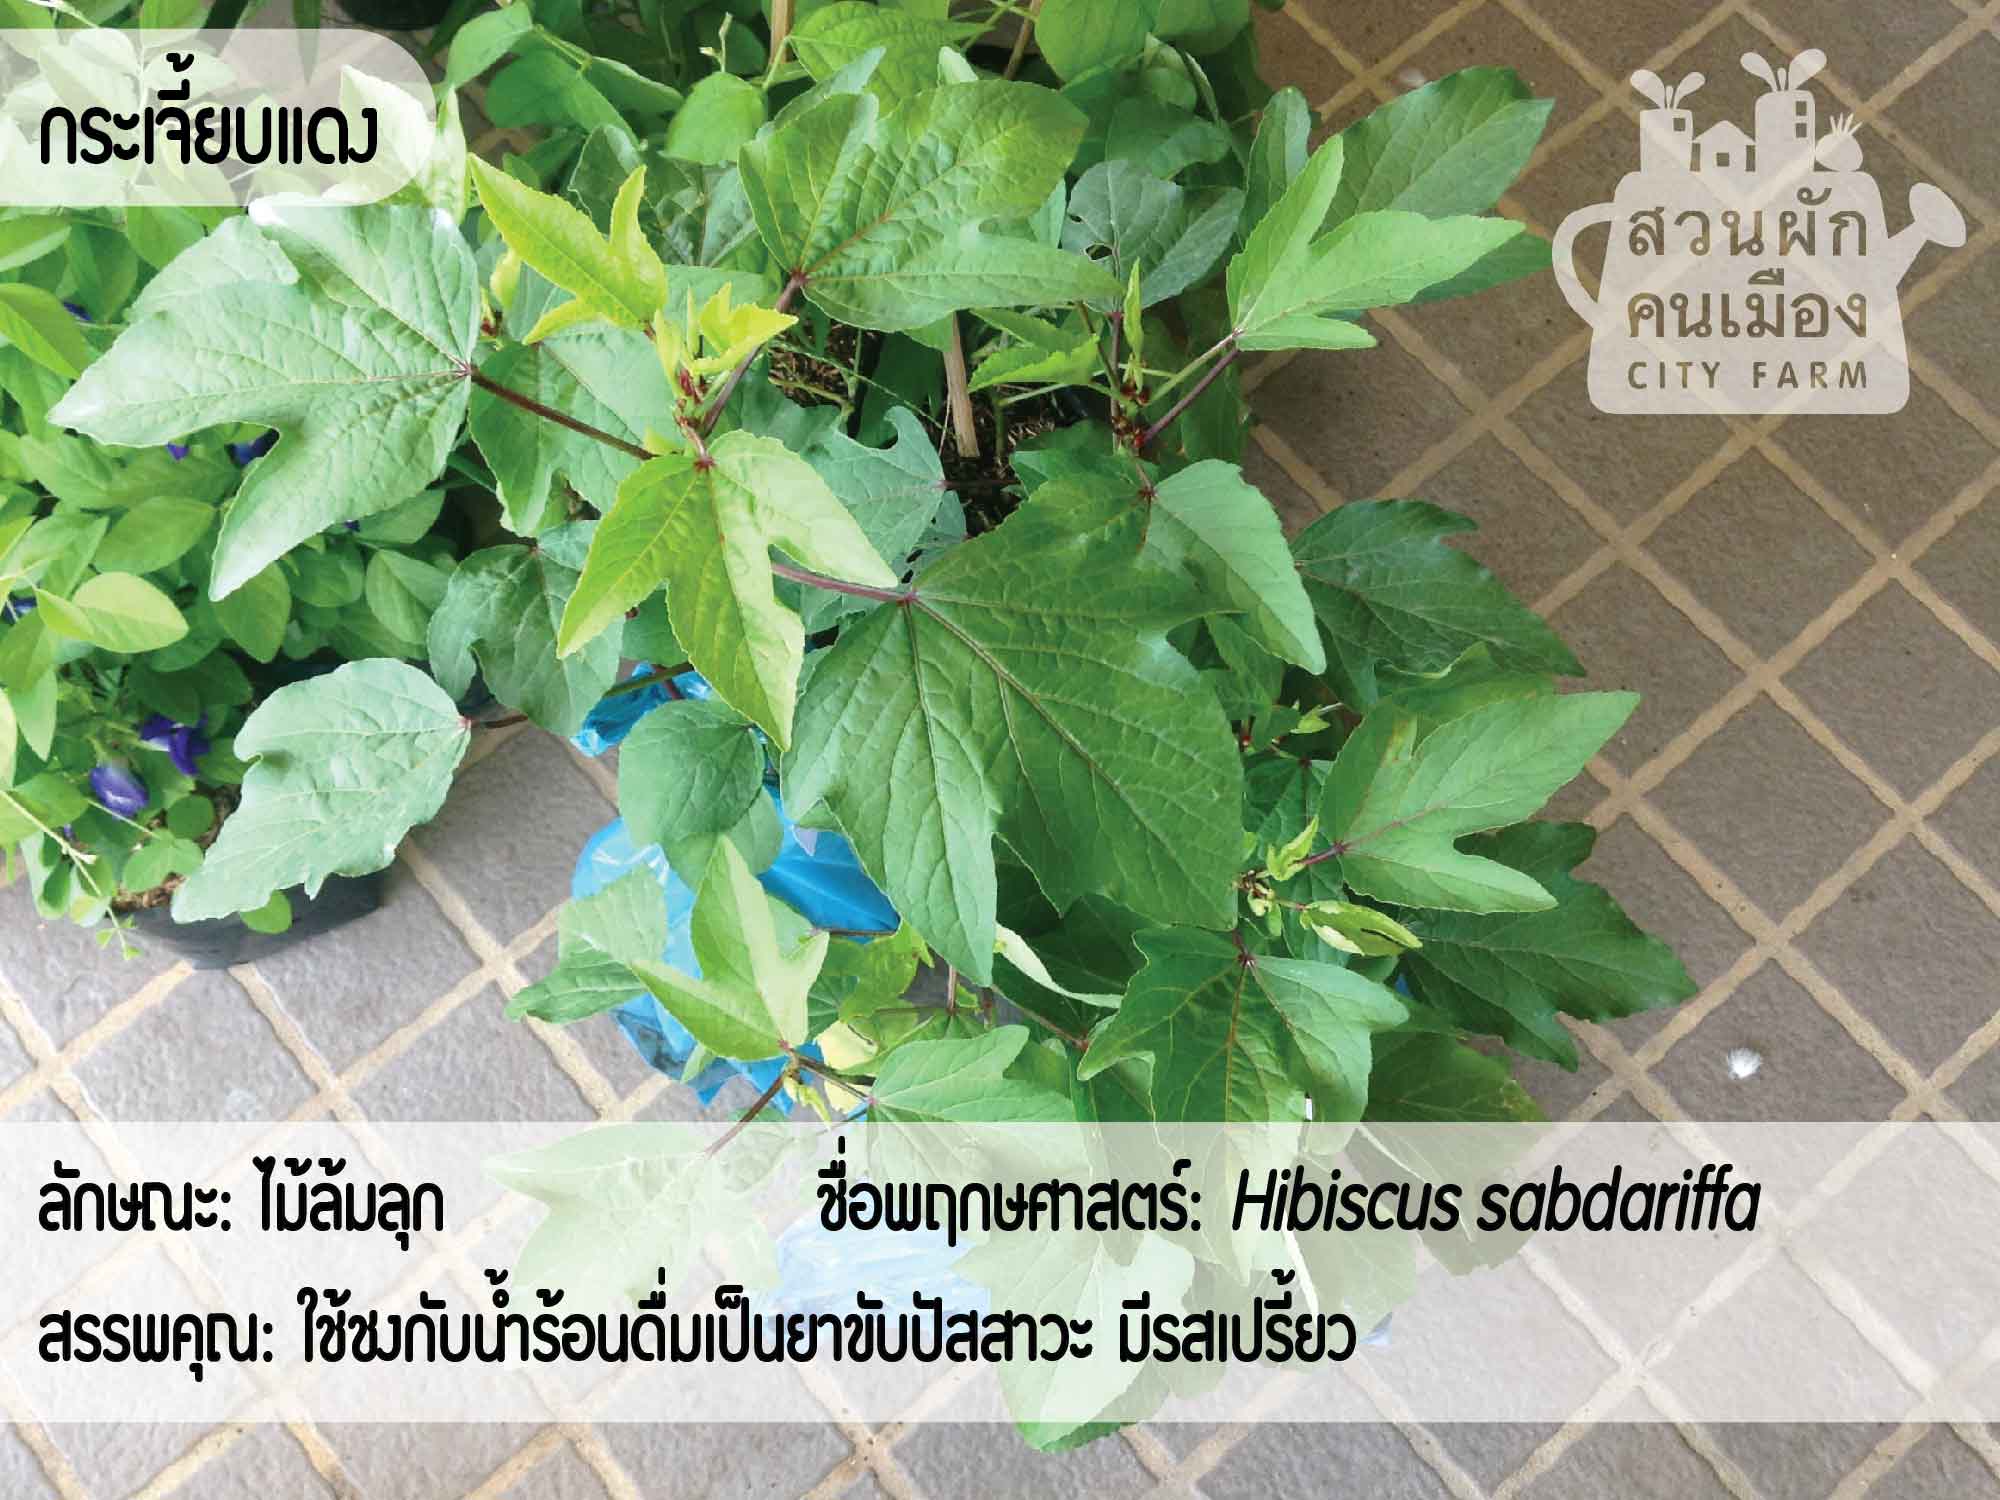 พฤกษศาสตร์พื้นบ้าน: พืชสมุนไพรไทย - สวนผักคนเมือง